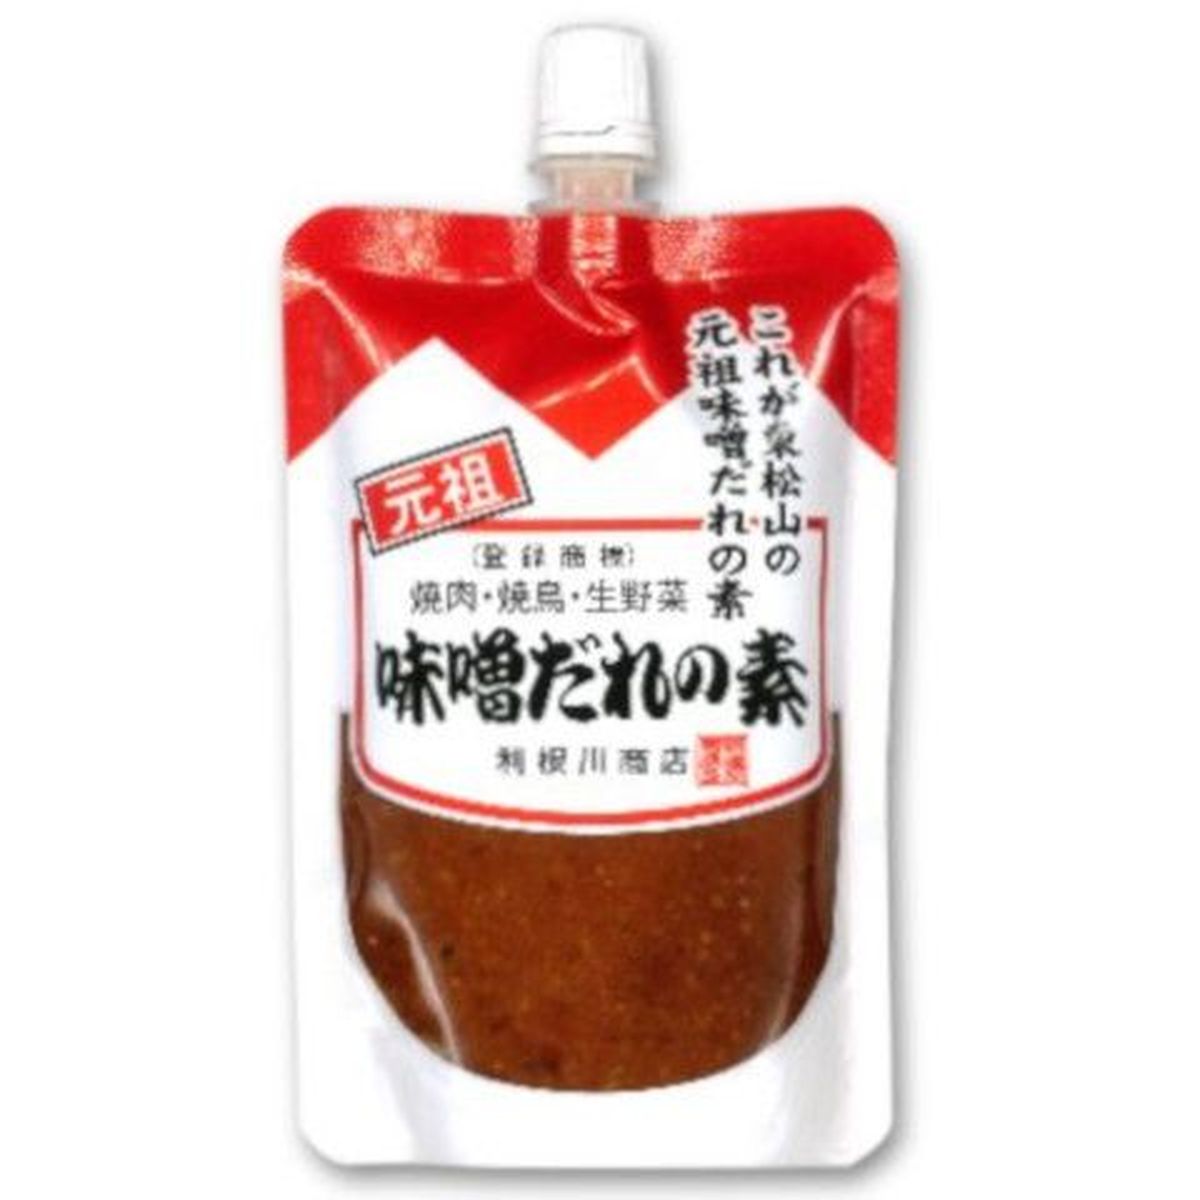 【24個入リ】利根川 味噌ダレノ素 スタンドパウチ 130g